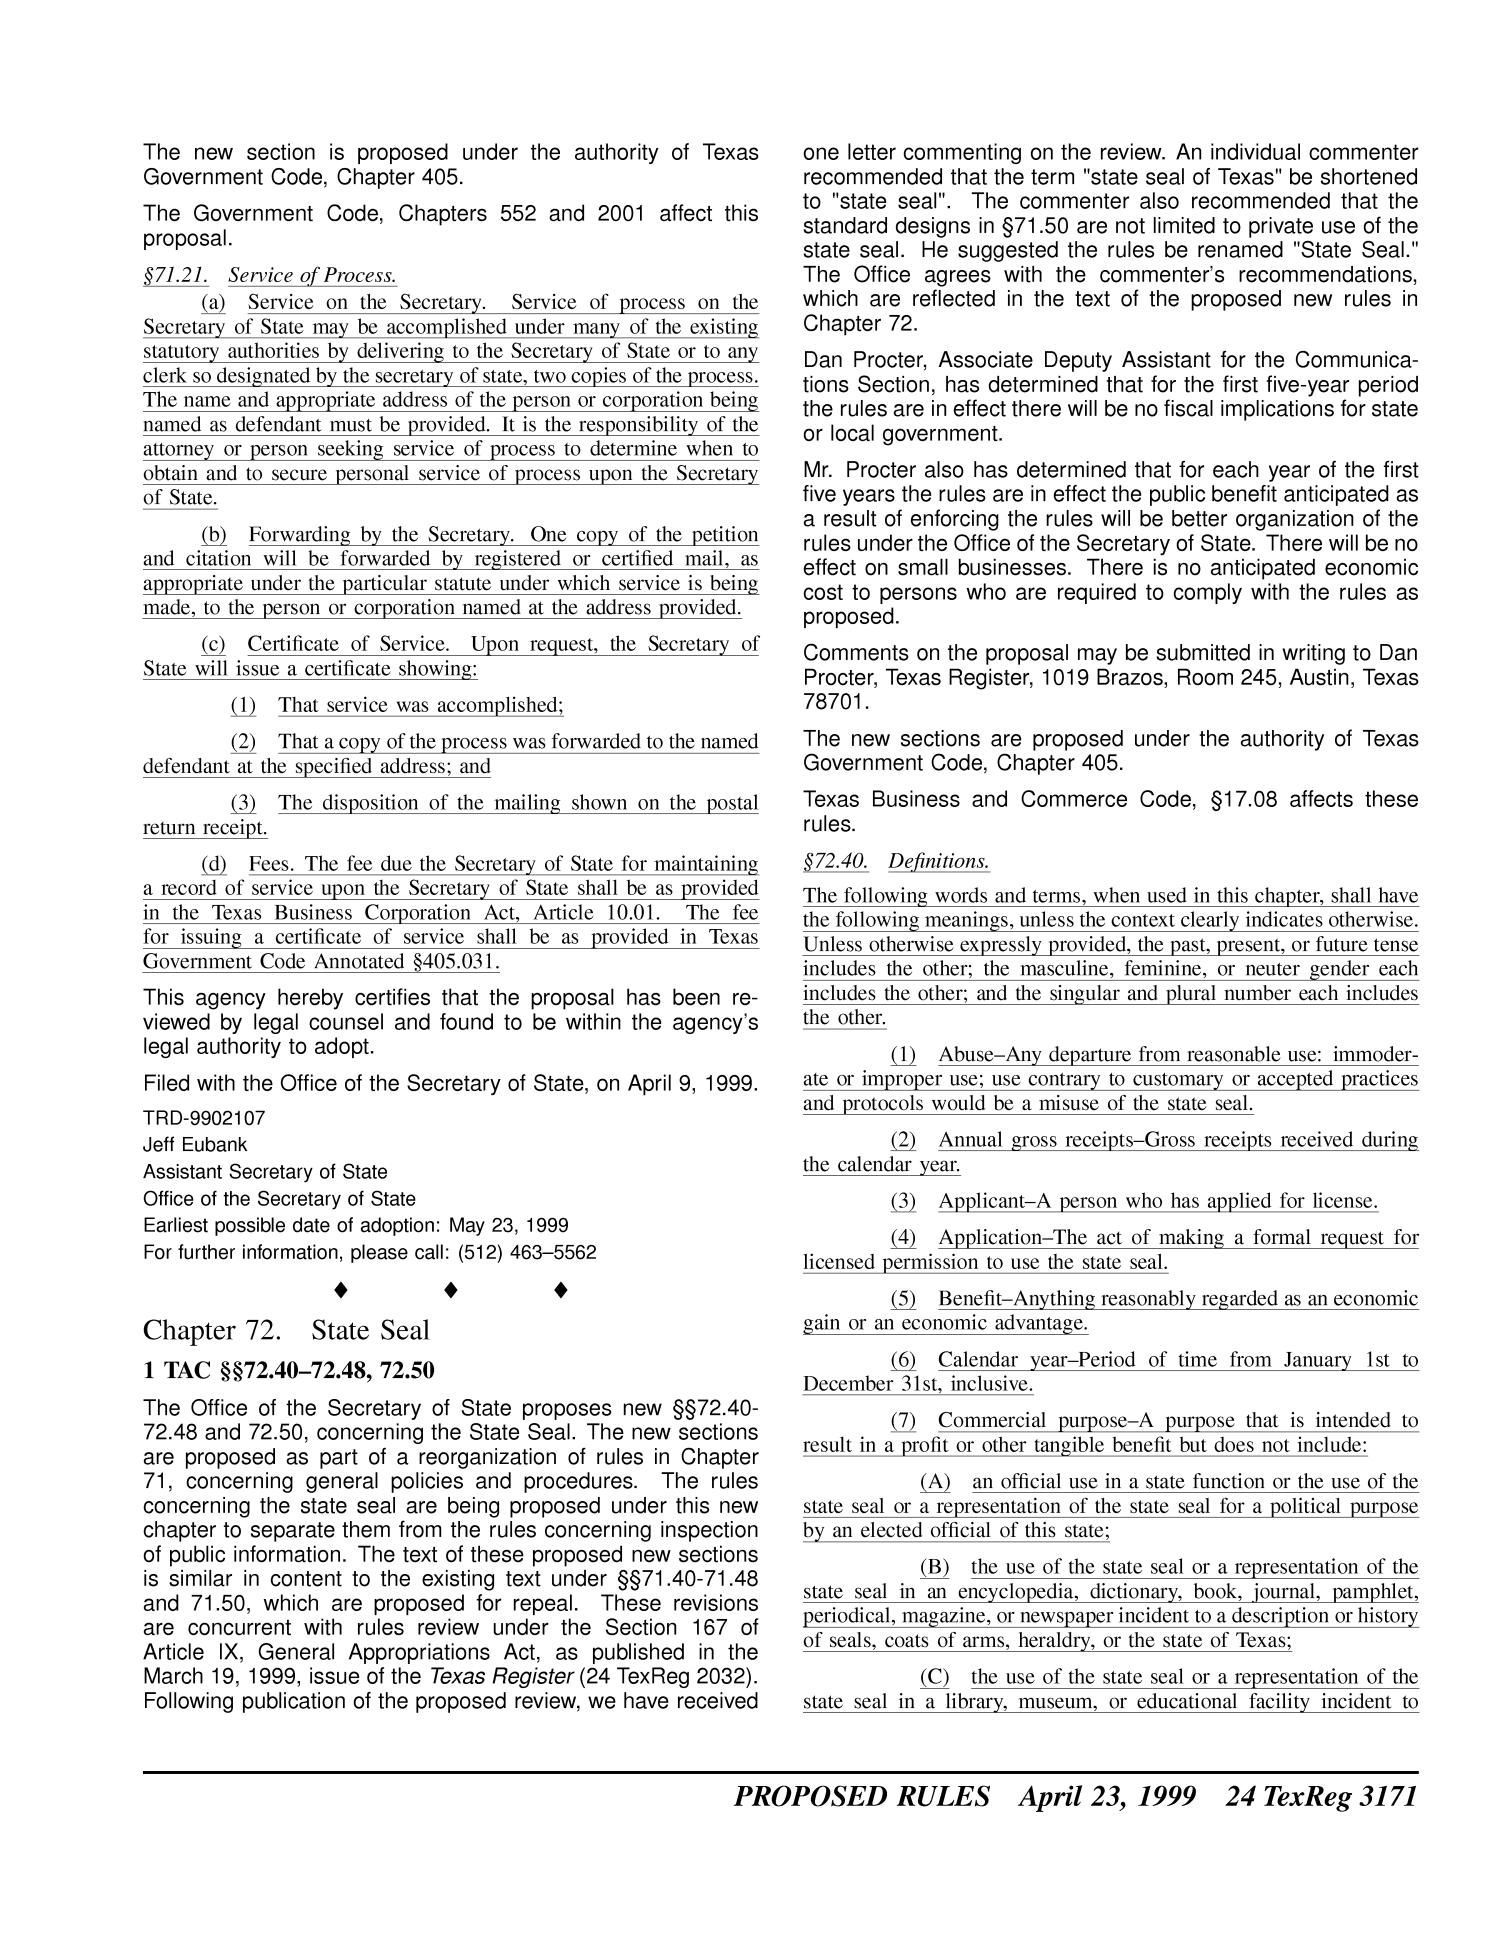 Texas Register, Volume 24, Number 17, Pages 3153-3263, April 23, 1999
                                                
                                                    3171
                                                